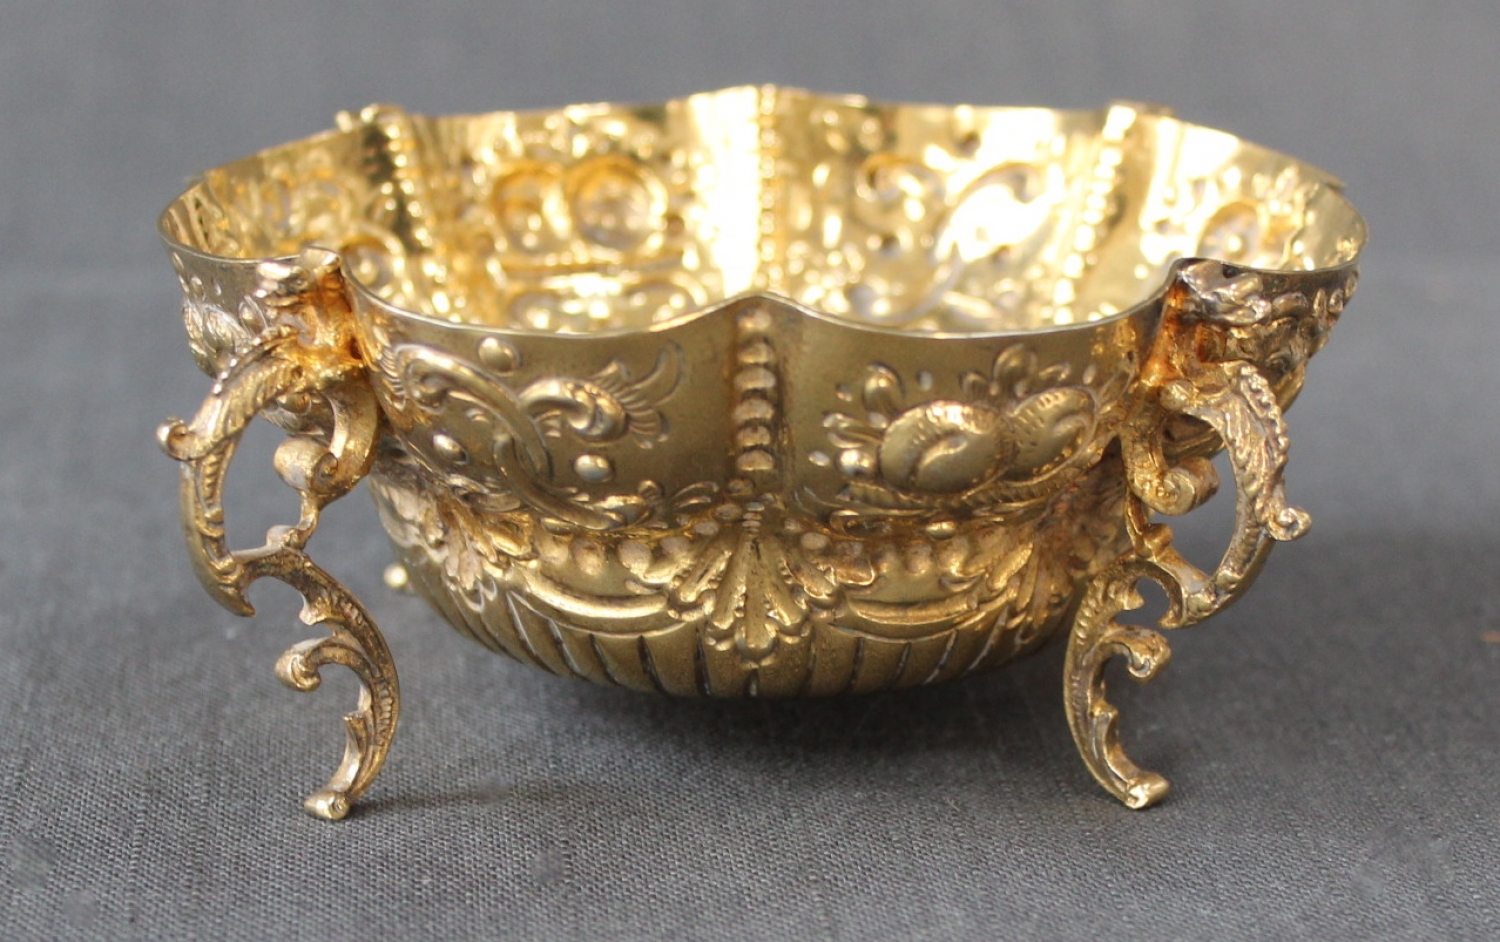 A Victorian silver-gilt sugar bowl